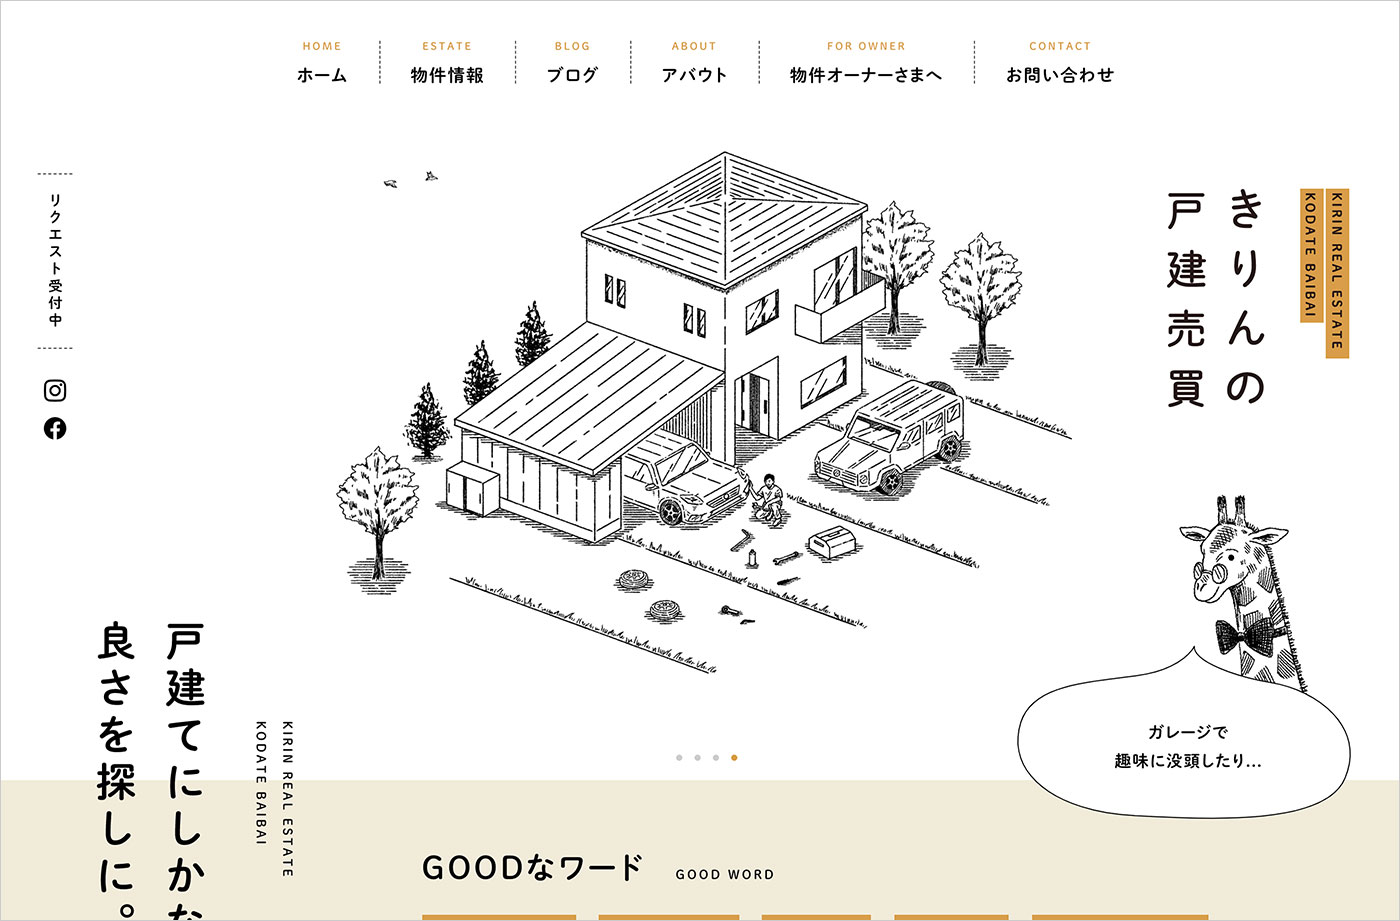 きりんの戸建売買 | 福岡市近郊の戸建て売買情報ウェブサイトの画面キャプチャ画像